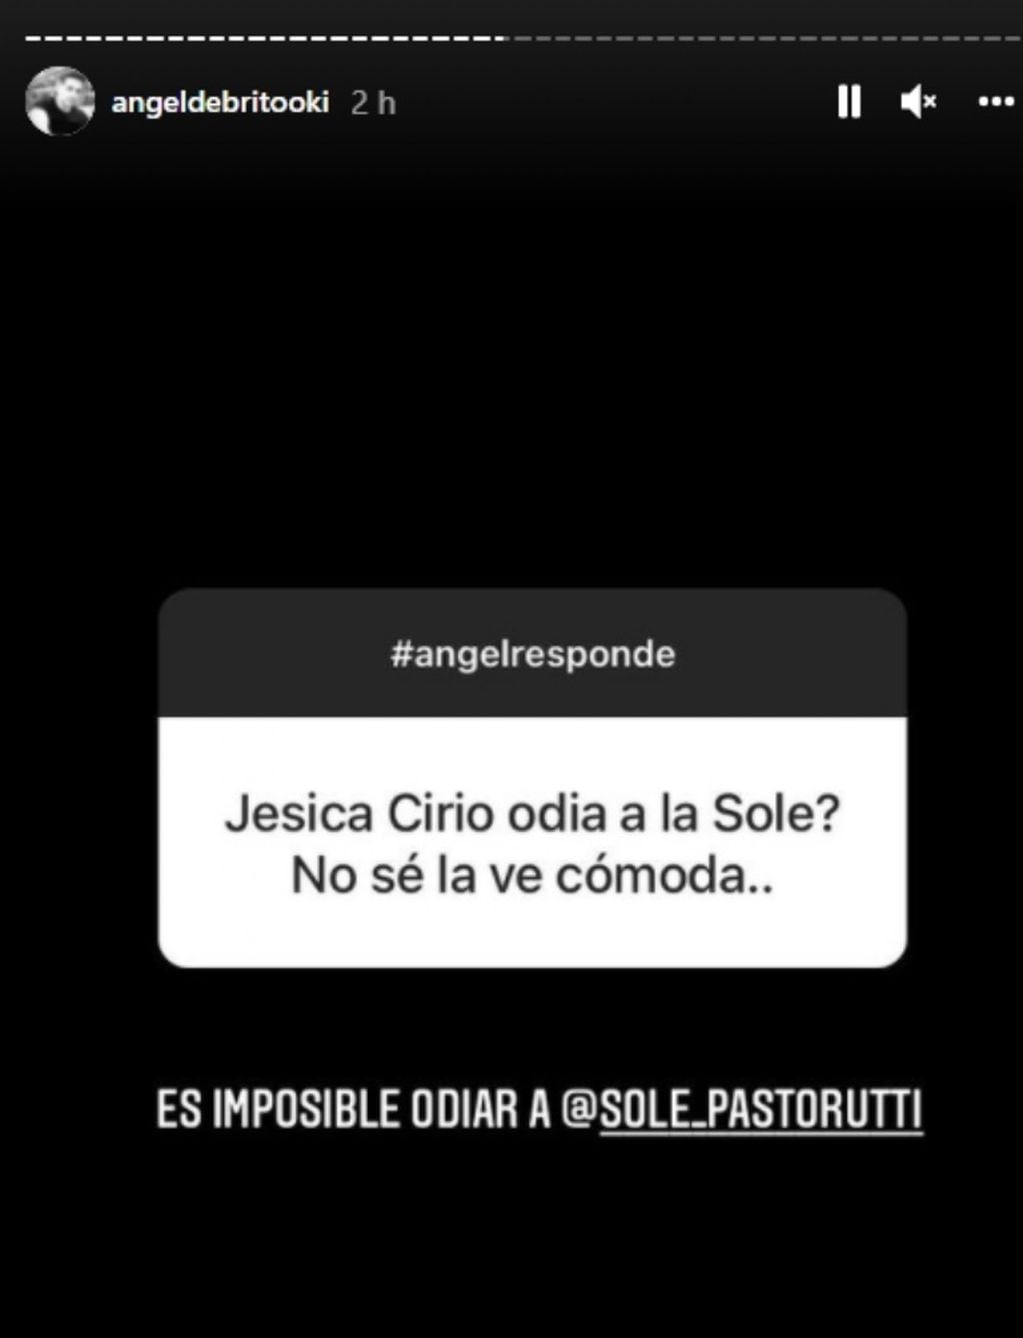 "¿Jésica Cirio odia a La Sole?": la pregunta para Ángel de Brito - Instagram